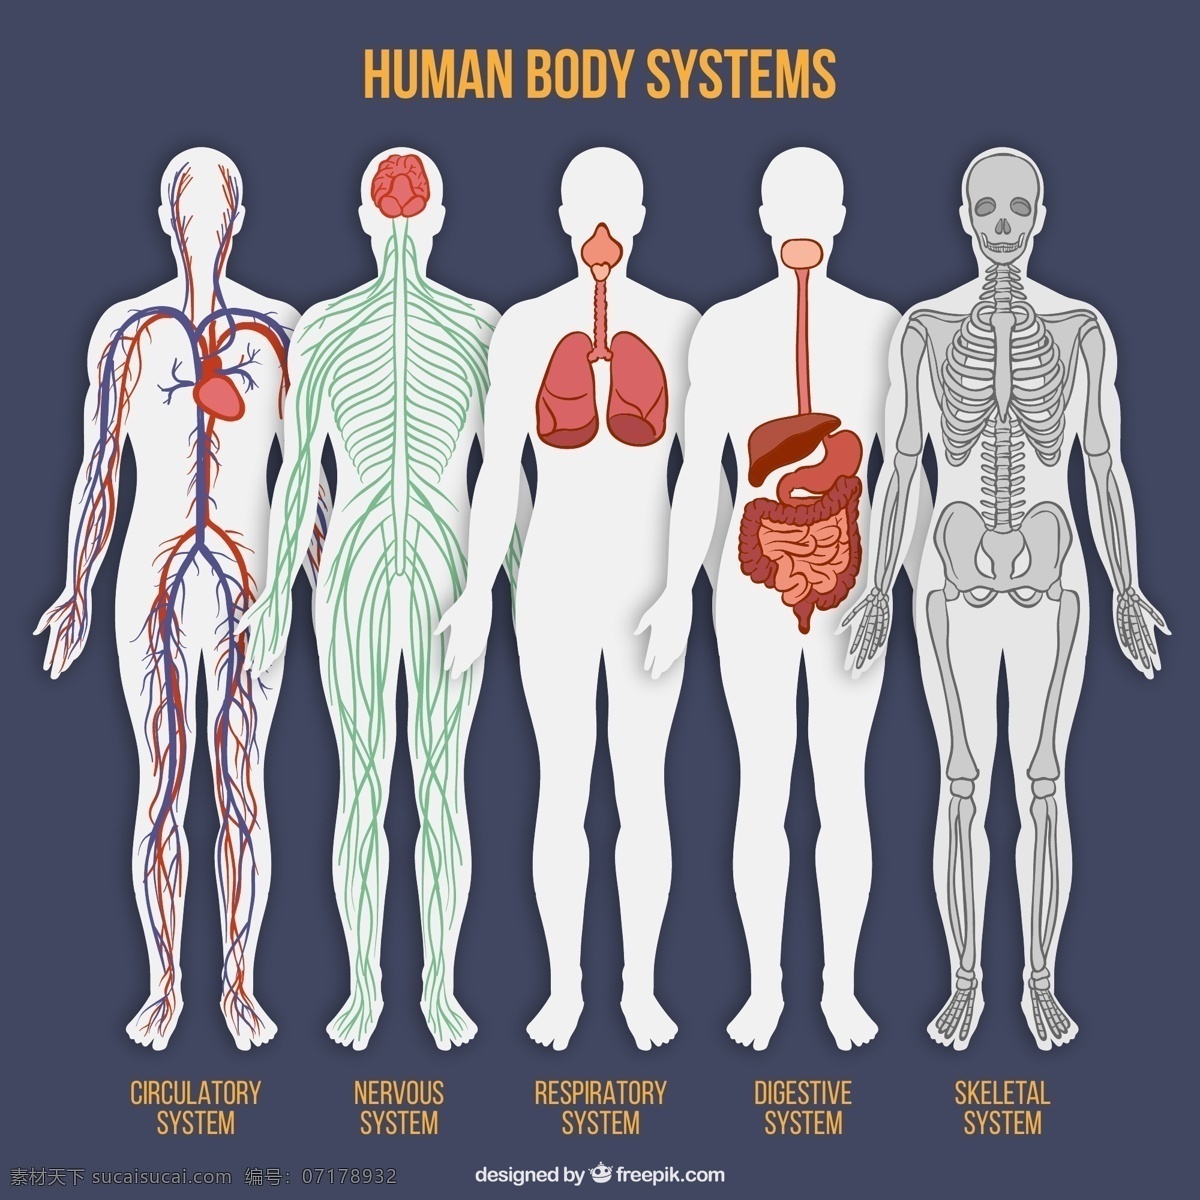 款 彩绘 人体 系统 平面图 矢量 器官 消化系统 神经系统 呼吸系统 循环系统 运动系统 骨骼 大脑 心脏 肺部 血管 神经 肠胃 人体系统 矢量图